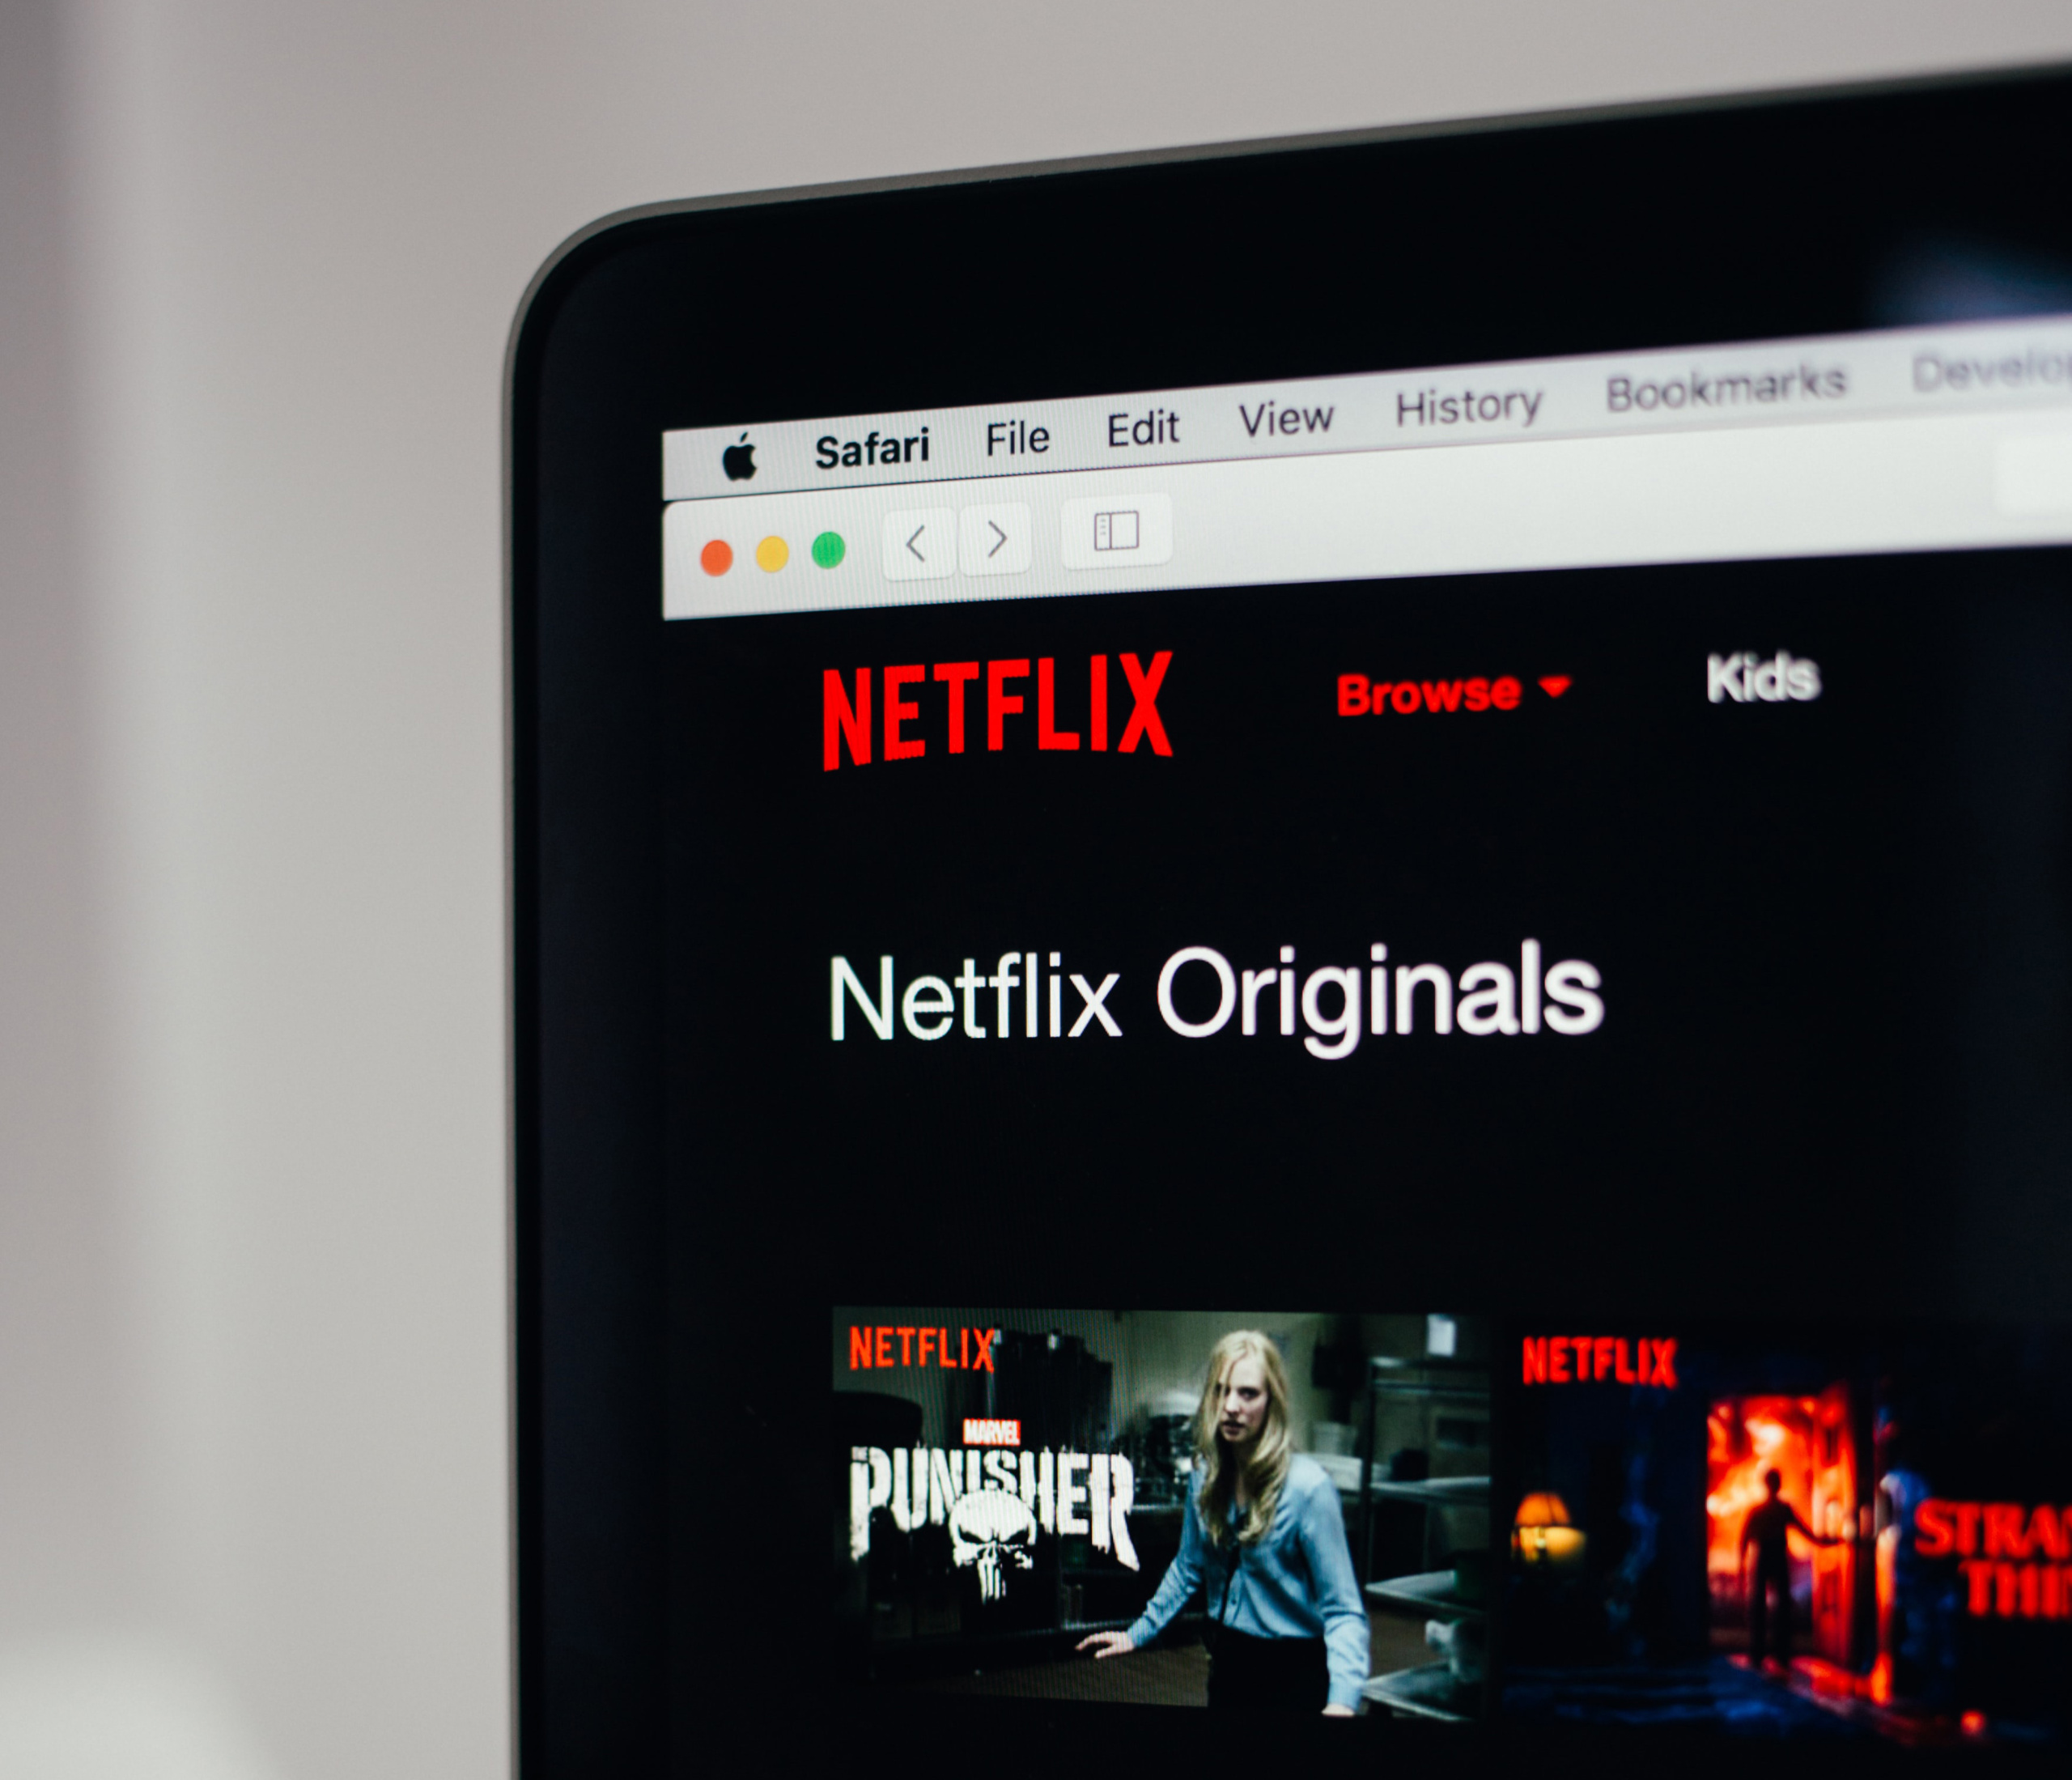 Доступніший тариф Netflix з рекламою (імовірно) неприємно здивує — відсутністю офлайн-перегляду та обмеженим каталогом